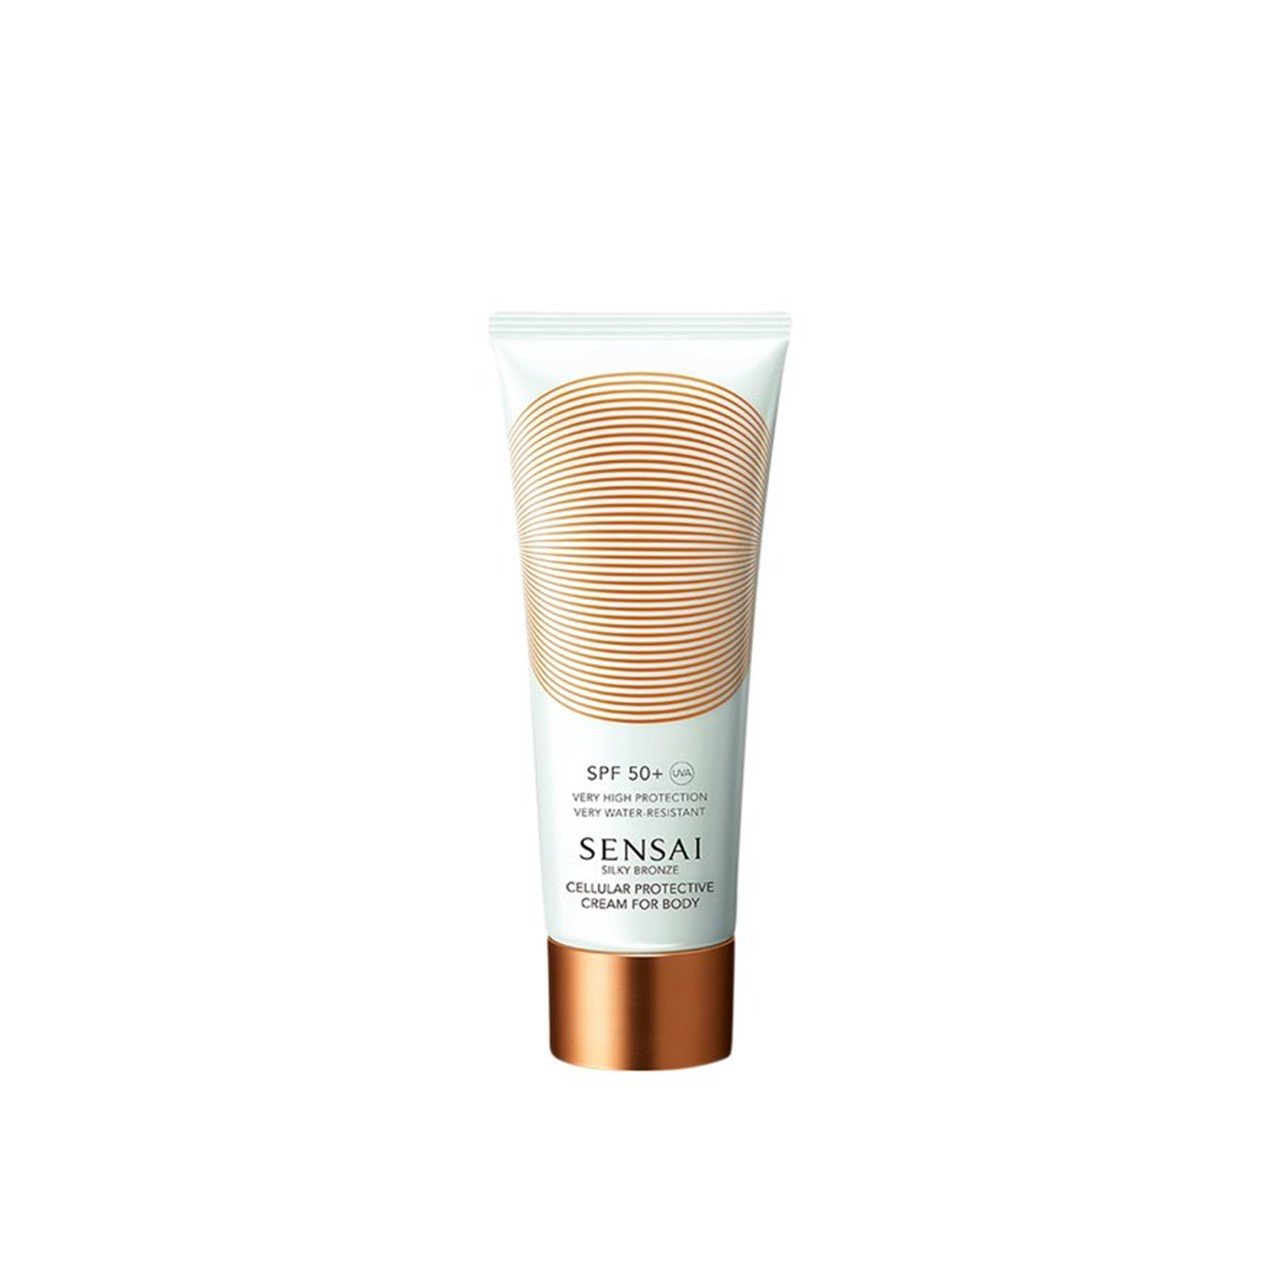 SENSAI Silky Bronze Cellular Protective Cream for Body SPF50+ 150ml